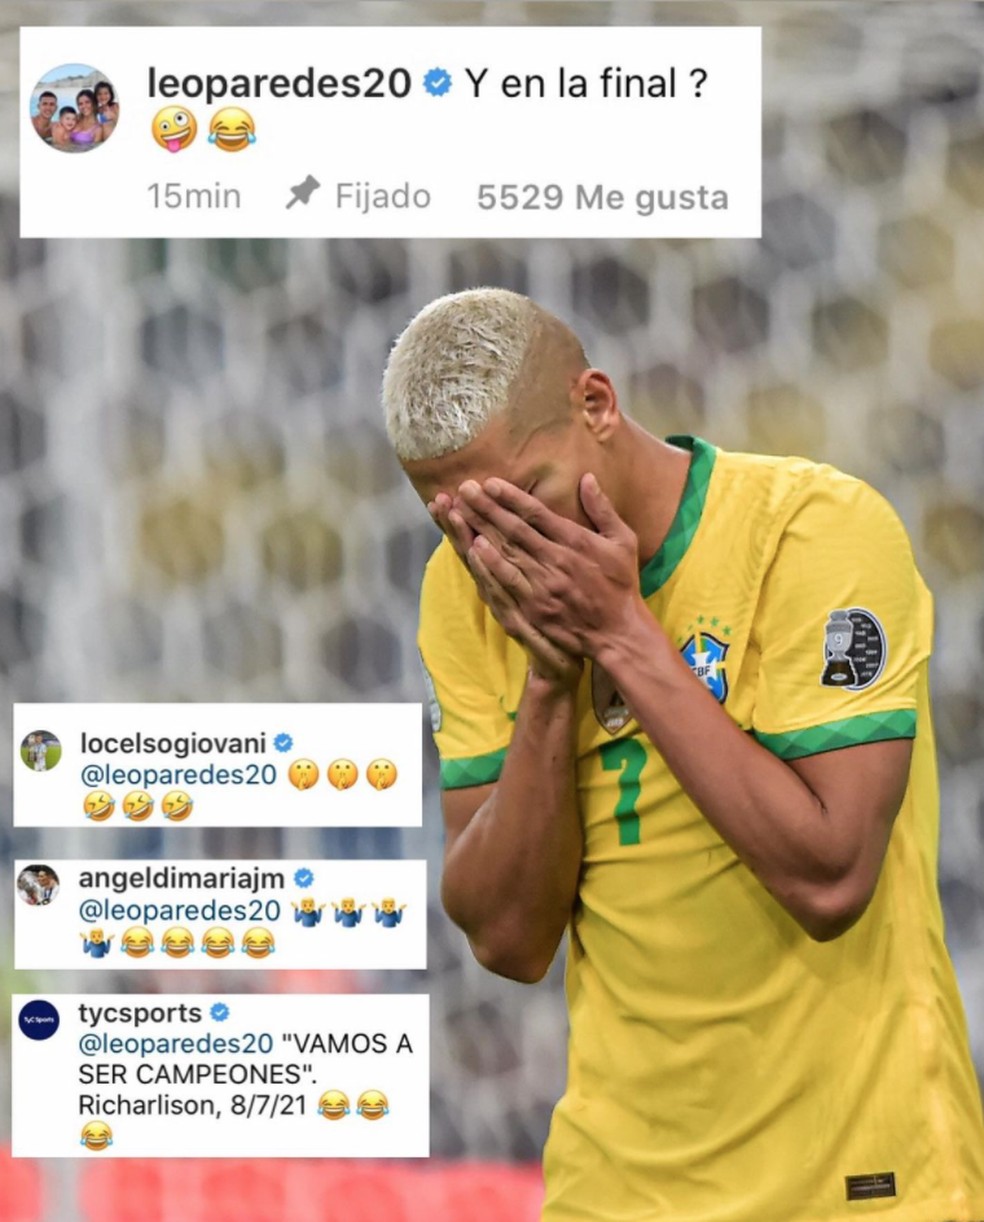 Leo Paredes, Giovani Lo Celso e Angel Di María provocaram Richarlison no Instagram durante as Olimpíadas. Mas agora não respondem mais o brasileiro — Foto: Reprodução / Instagram